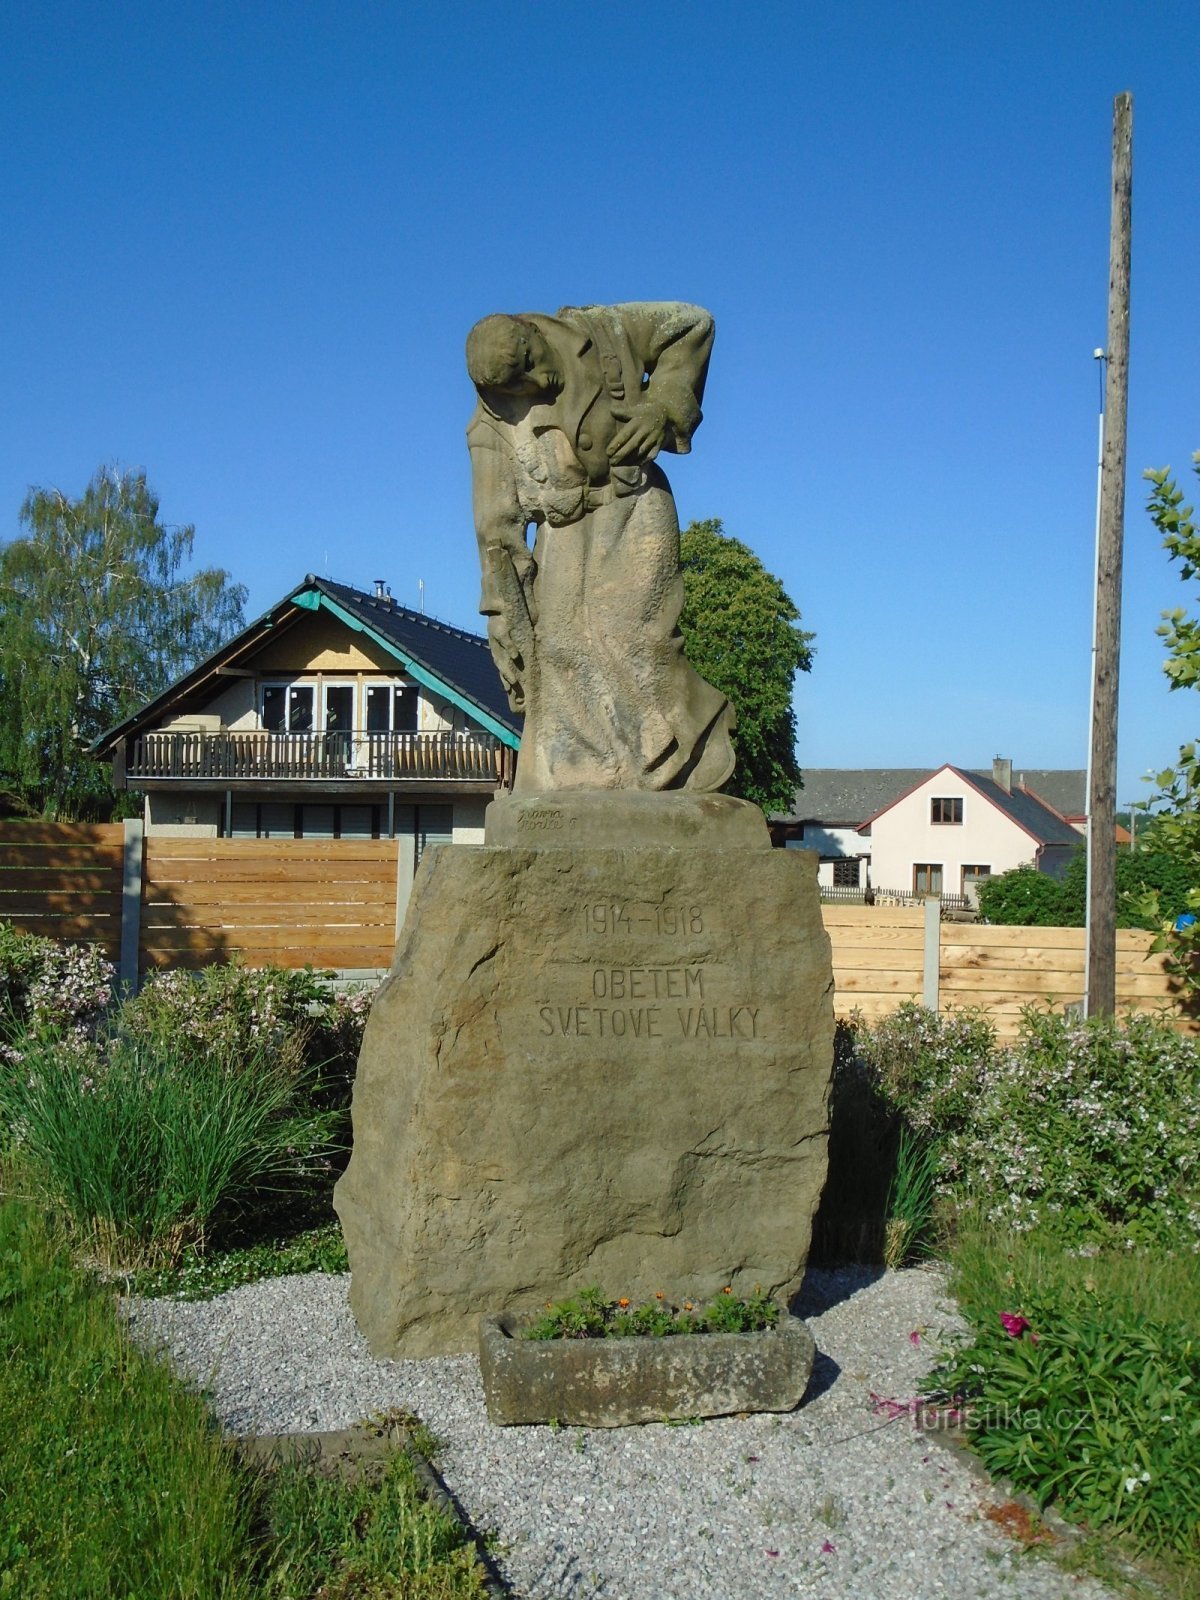 第一次世界大战阵亡将士纪念碑 (Čistěves)